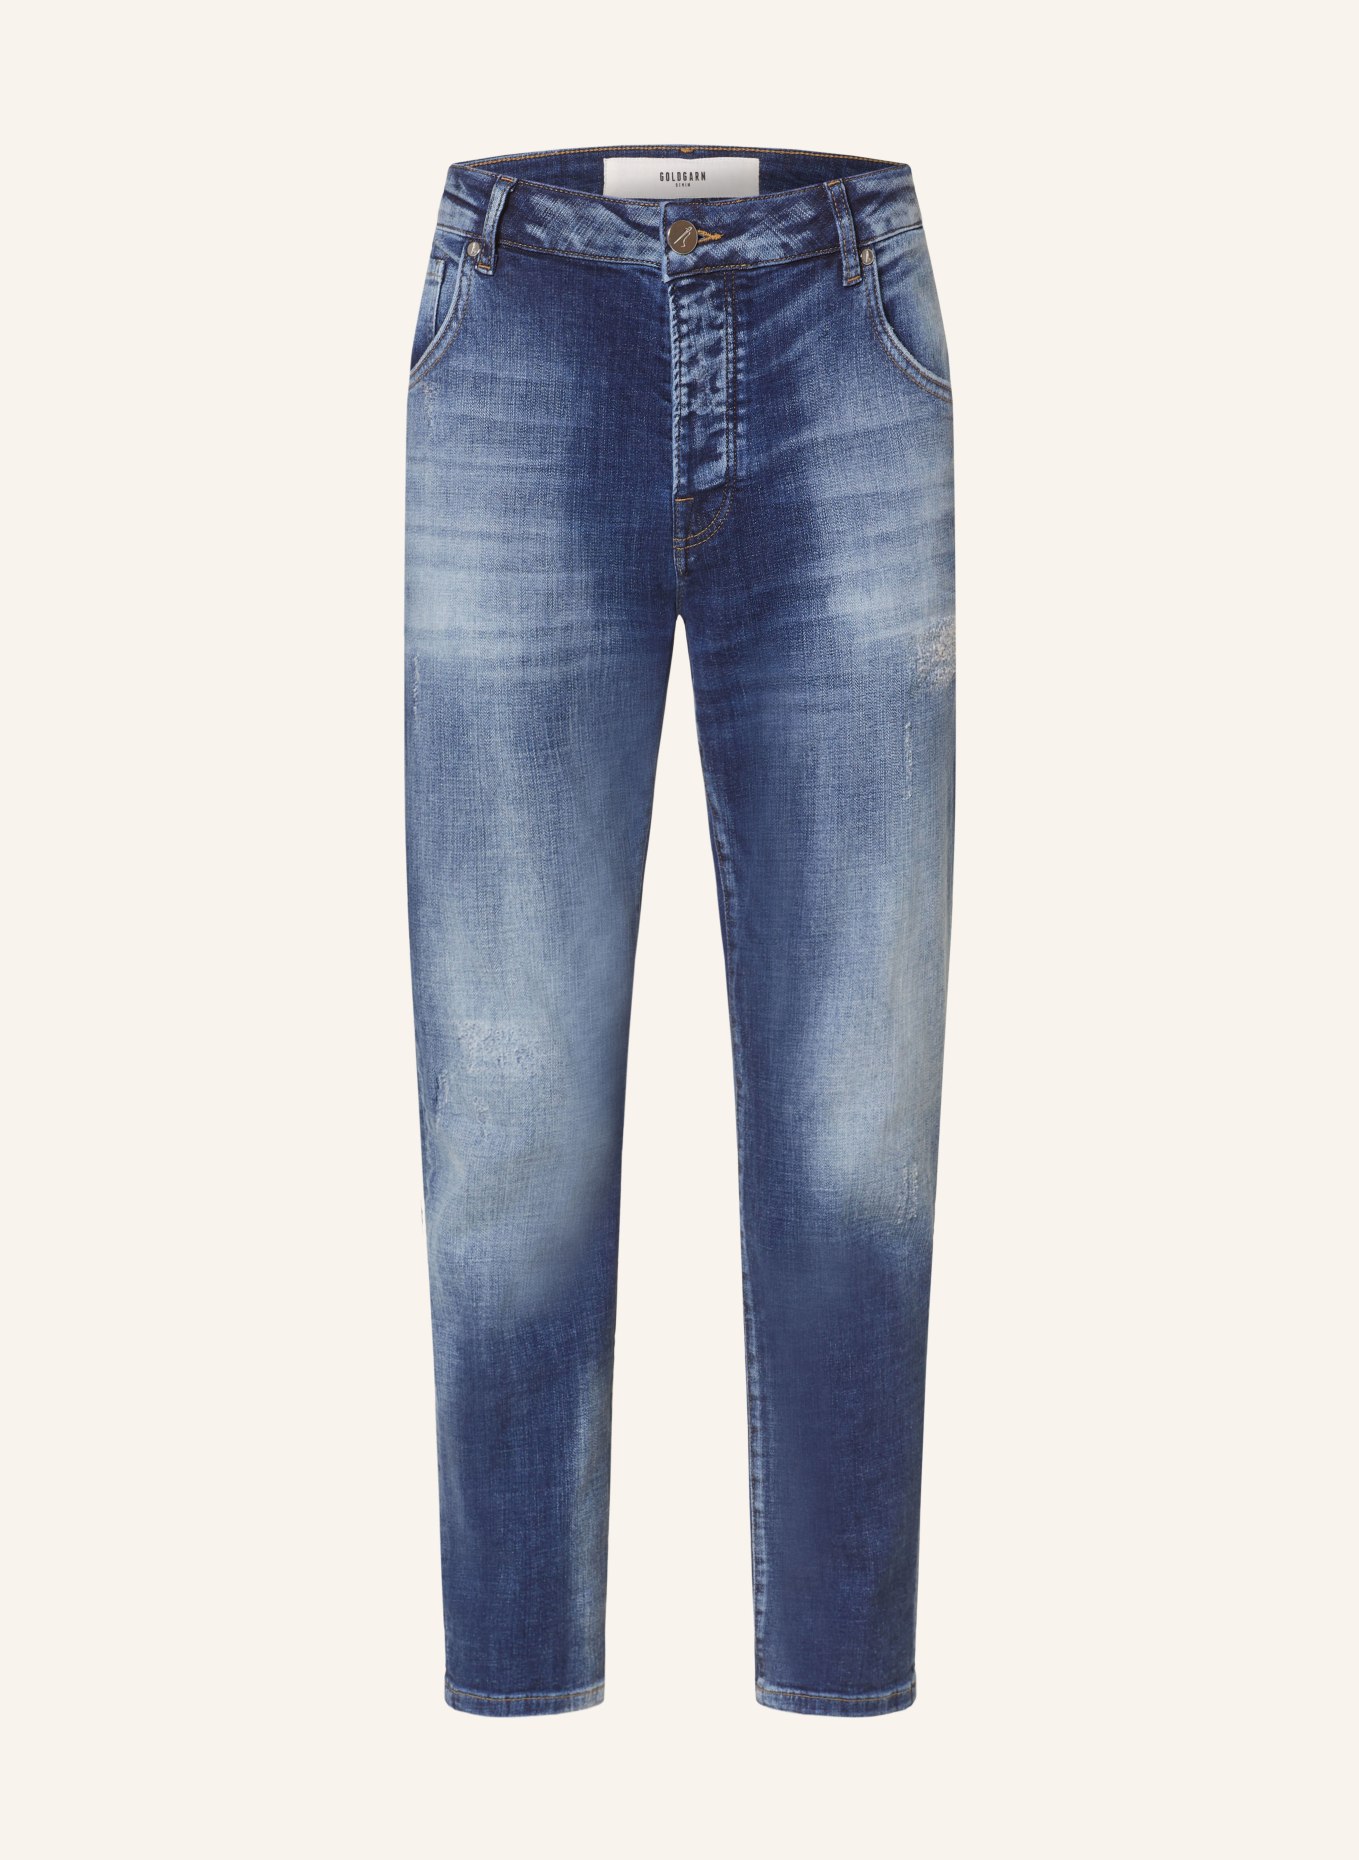 GOLDGARN DENIM Jeans NECKARAU twisted fit, Color: 1010 Vintageblue (Image 1)